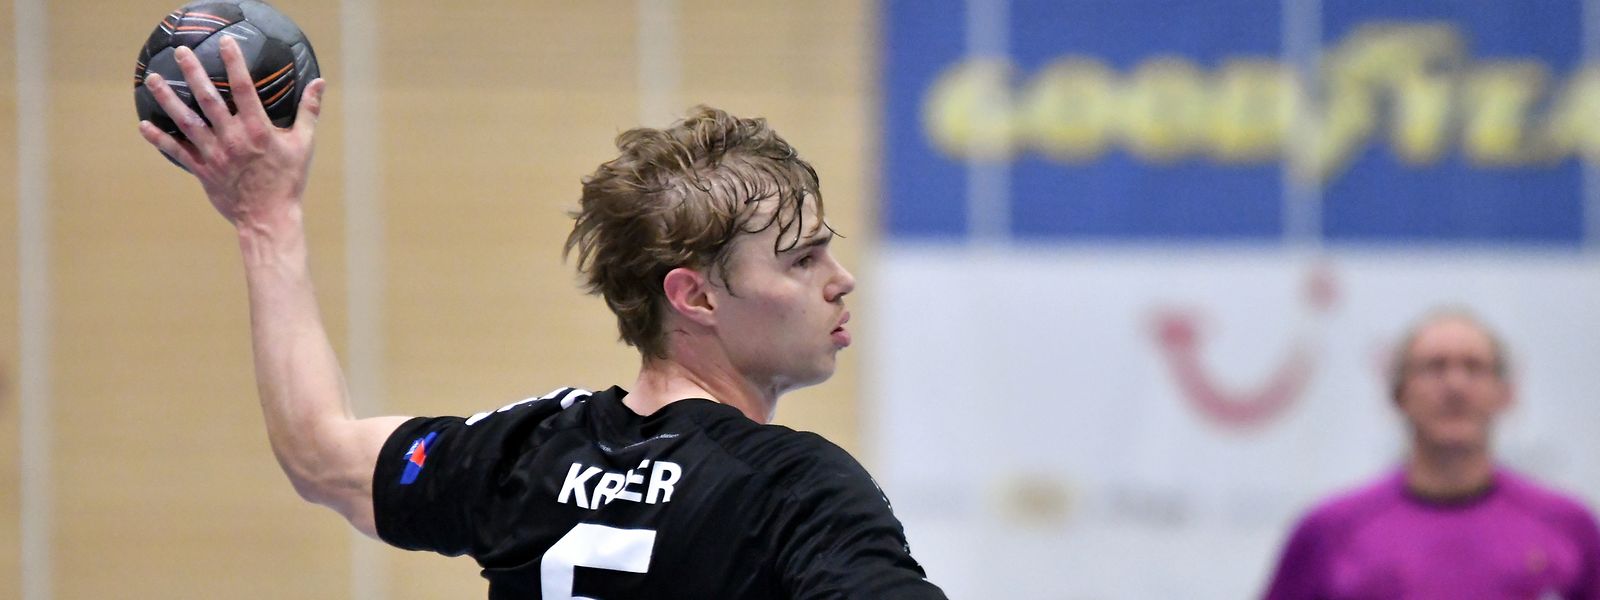 Tom Krier, Handball Esch. Handball : Handball Käerjeng – Handball Esch, quart de finale Coupe. Um Dribbel, Bascharage. Foto : Stéphane Guillaume